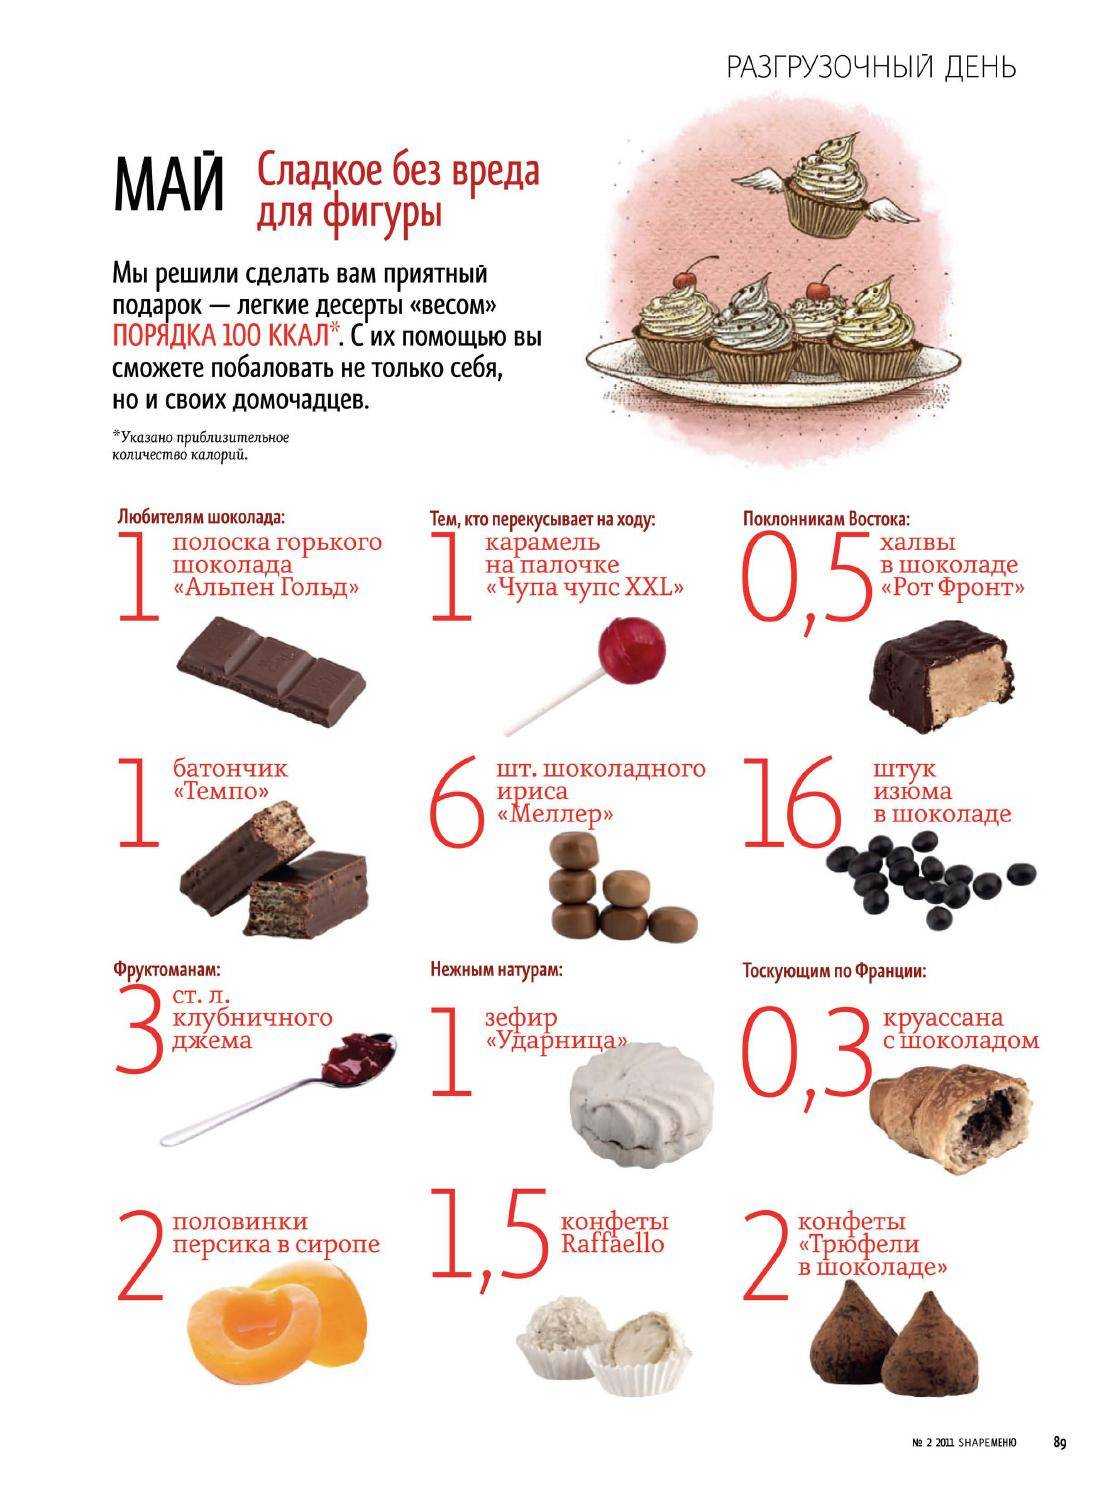 Конфета шоколадная калорийность в 1 штуке